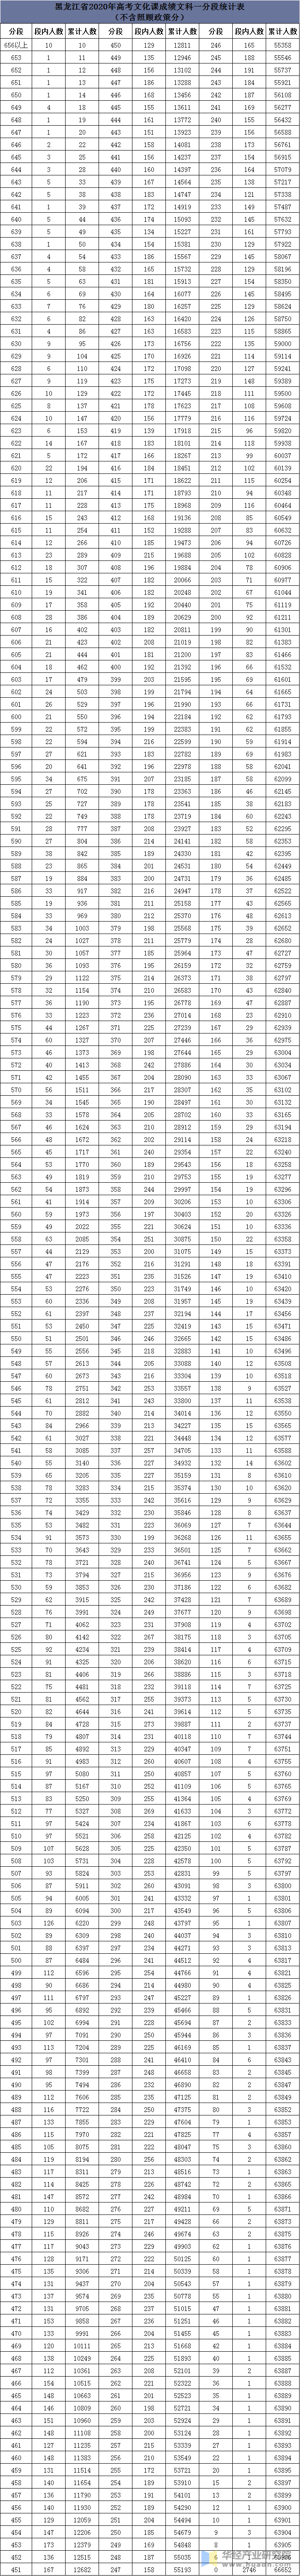 2020年黑龙江省高考文史分段表